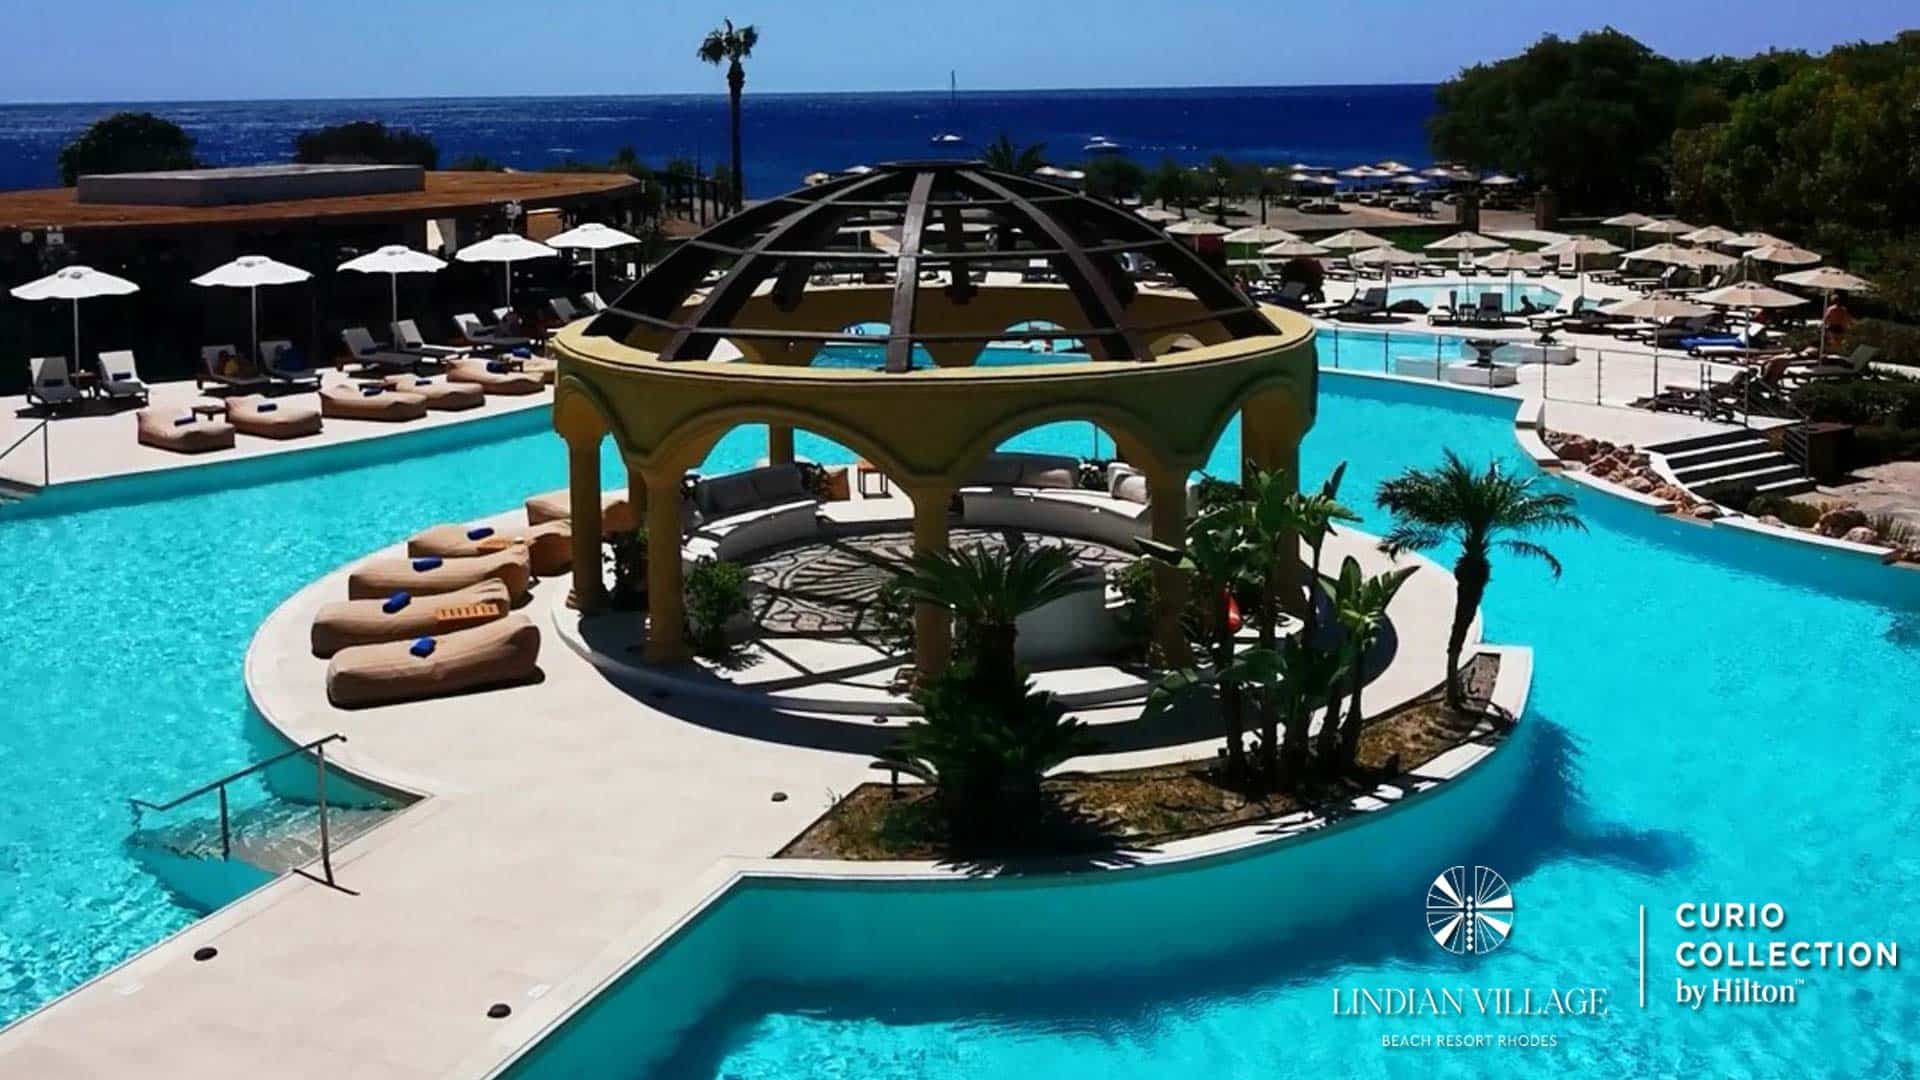 Lindian Village Beach Resort Rhodes, Curio Collection by Hilton: Μια μοναδική εμπειρία